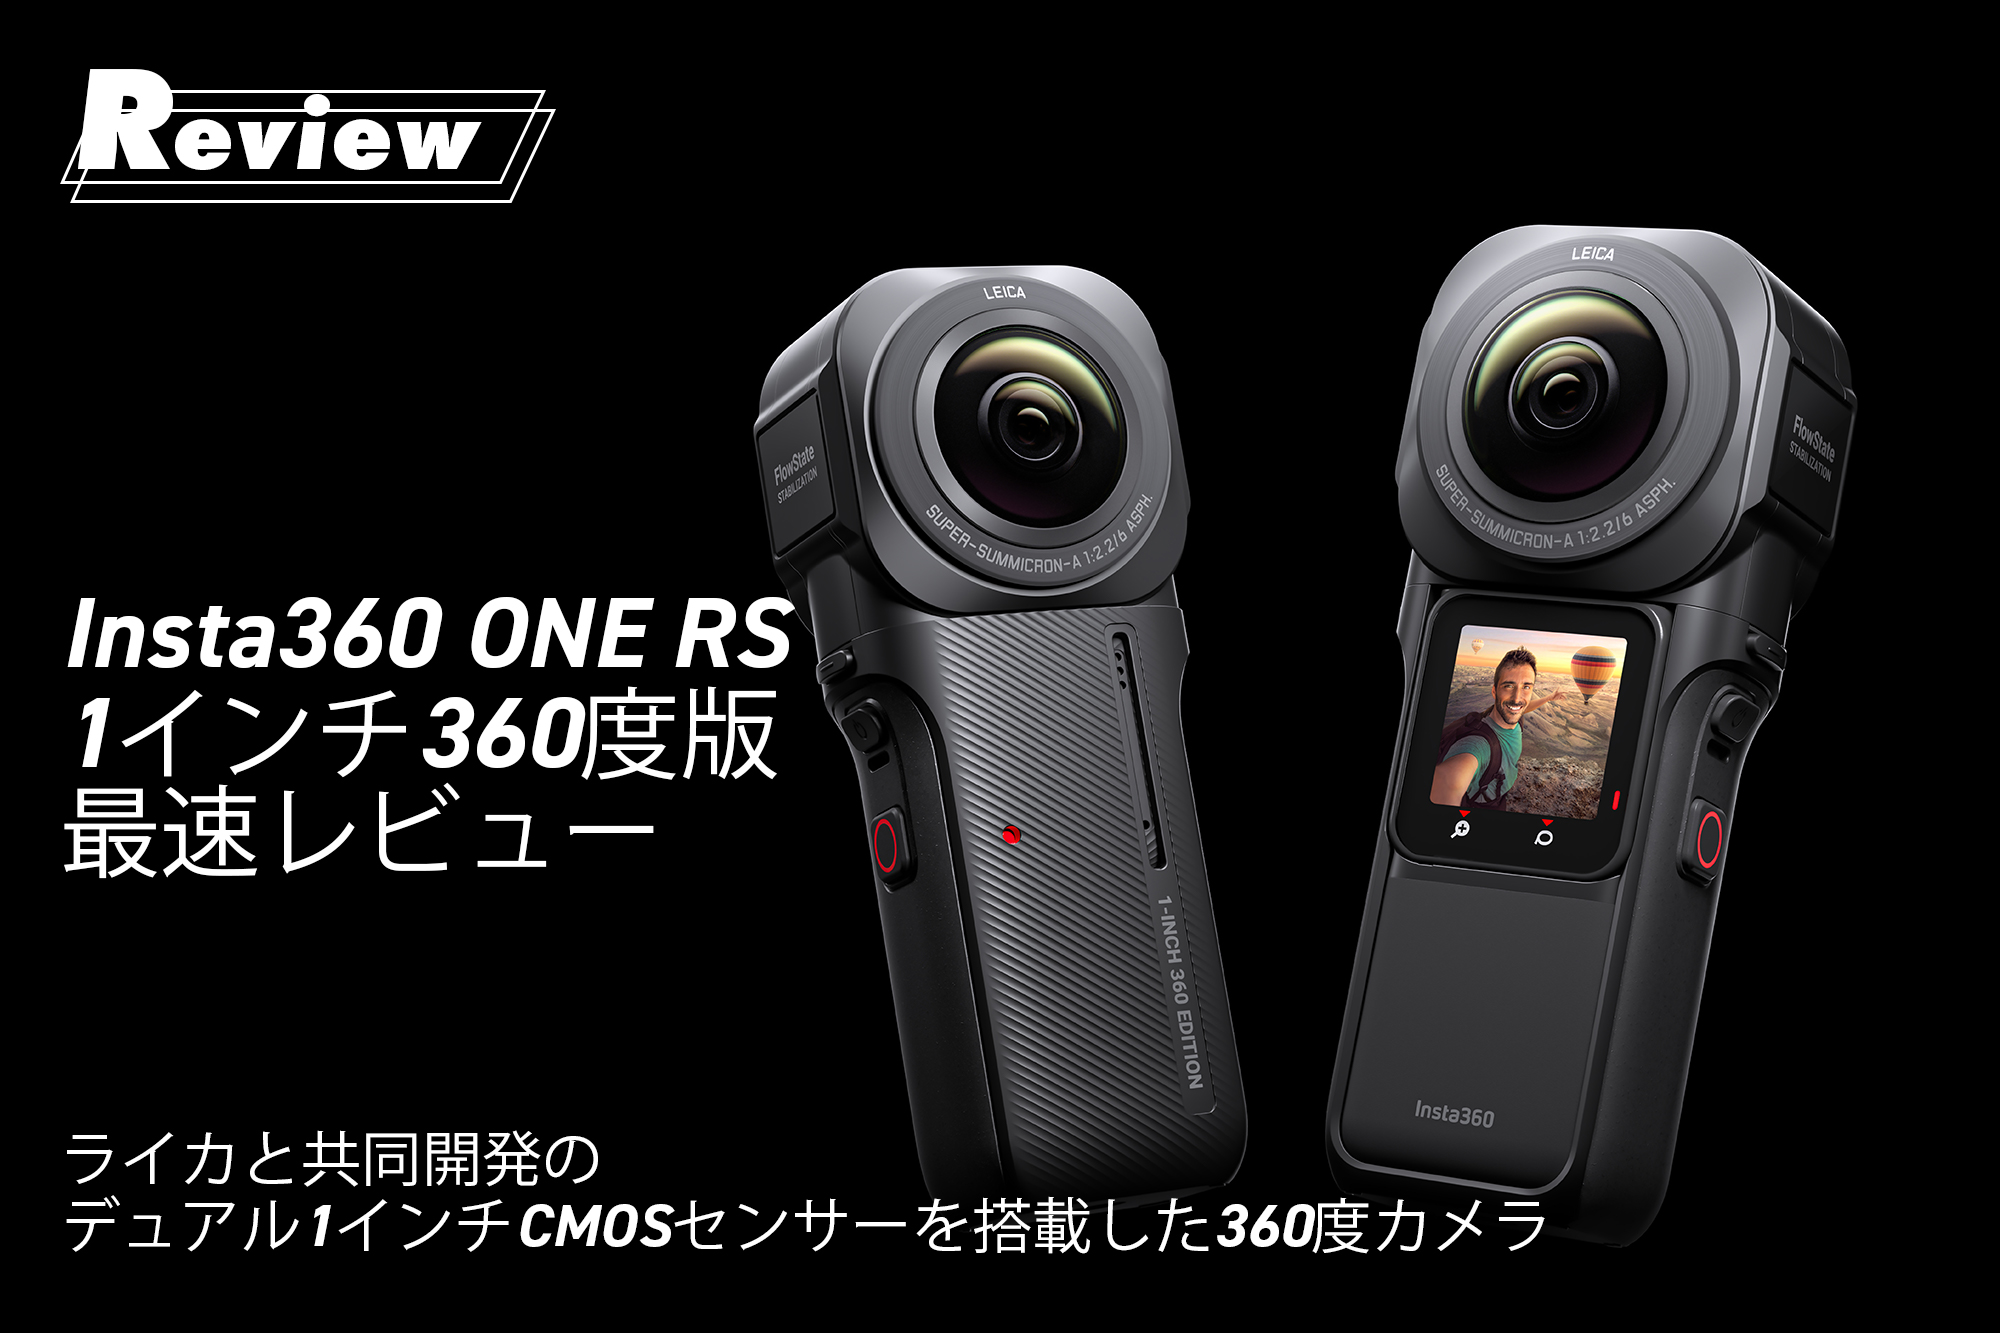 VideoSALON---Insta360 ONE RS 1インチ360度版 最速レビュー ～ライカと共同開発のデュアル1インチCMOSセンサーを搭載した360度カメラ